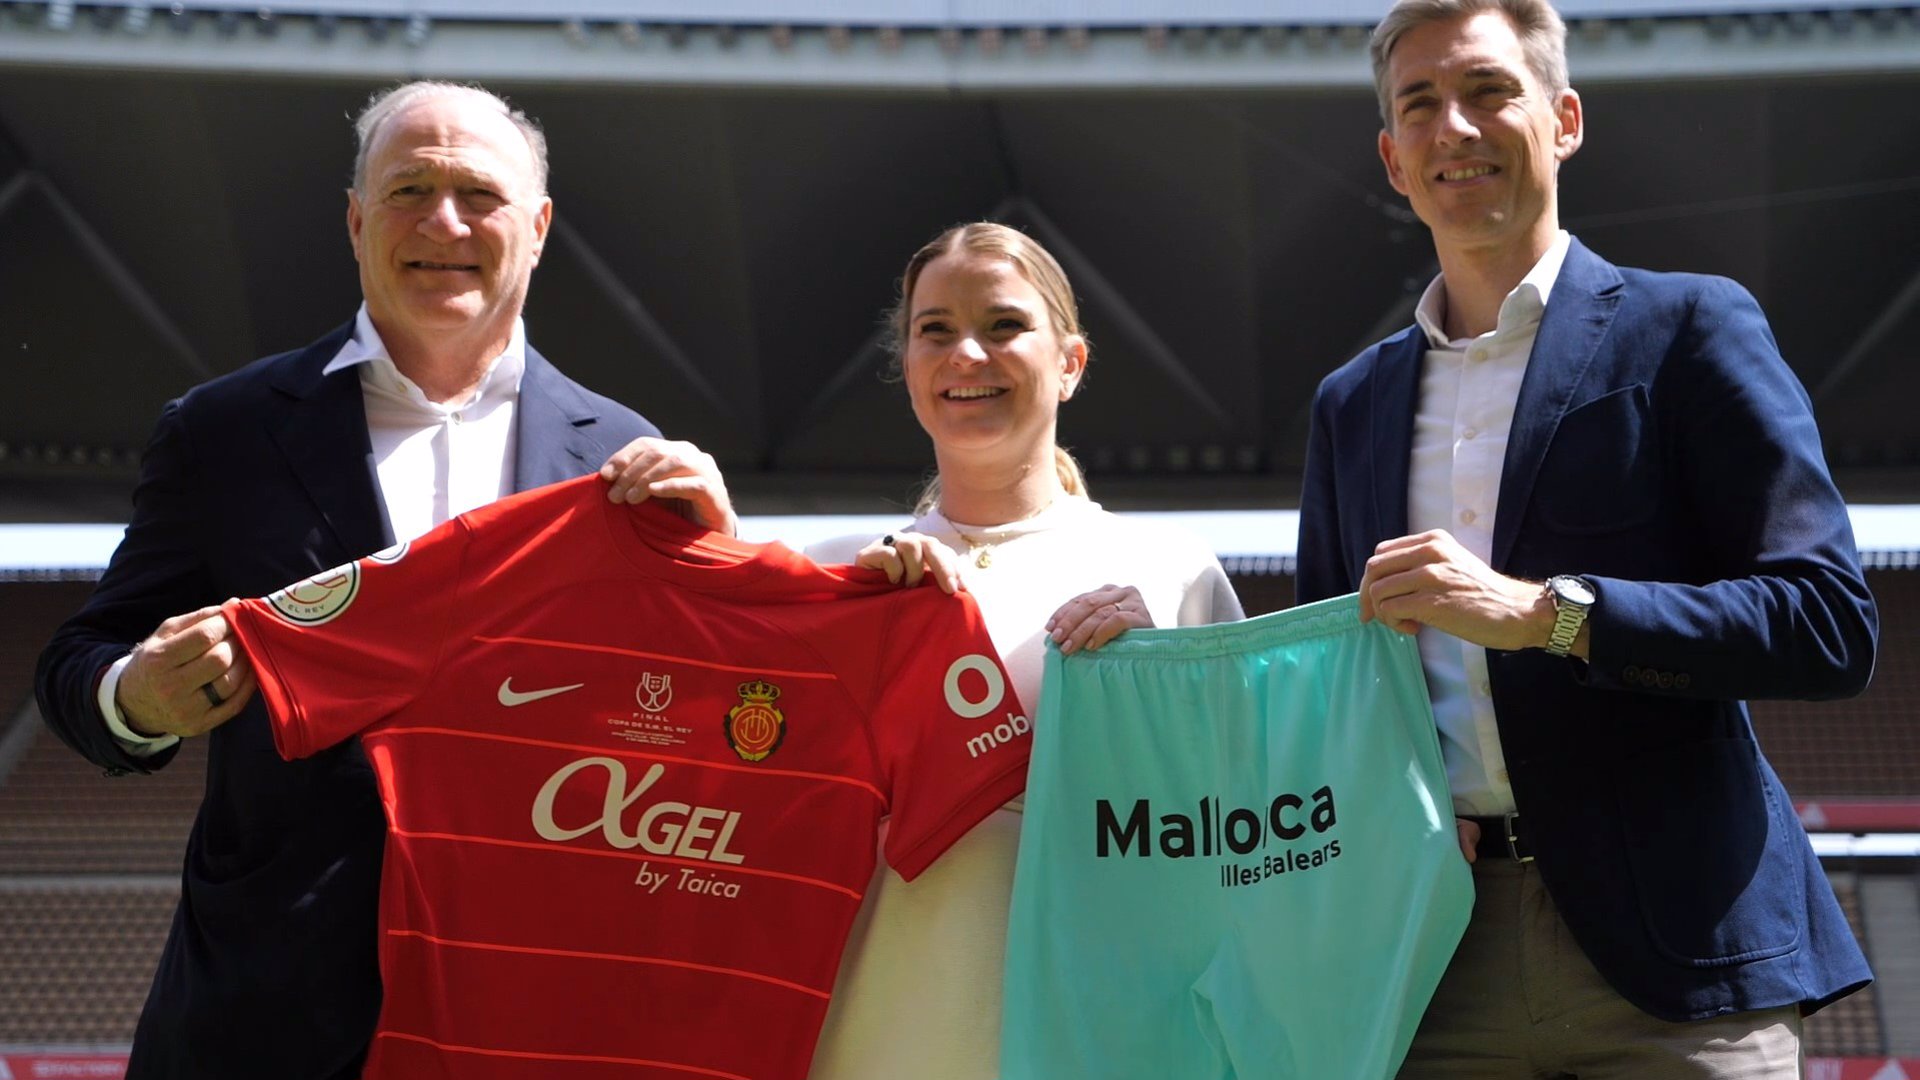 La presidenta del Govern, Marga Prohens, presenta en Sevilla la nueva equipación del RCD Mallorca, acompañada del propietario del club, Andy Kohlberg, y el CEO de negocio, Alfonso Díaz. - CAIB